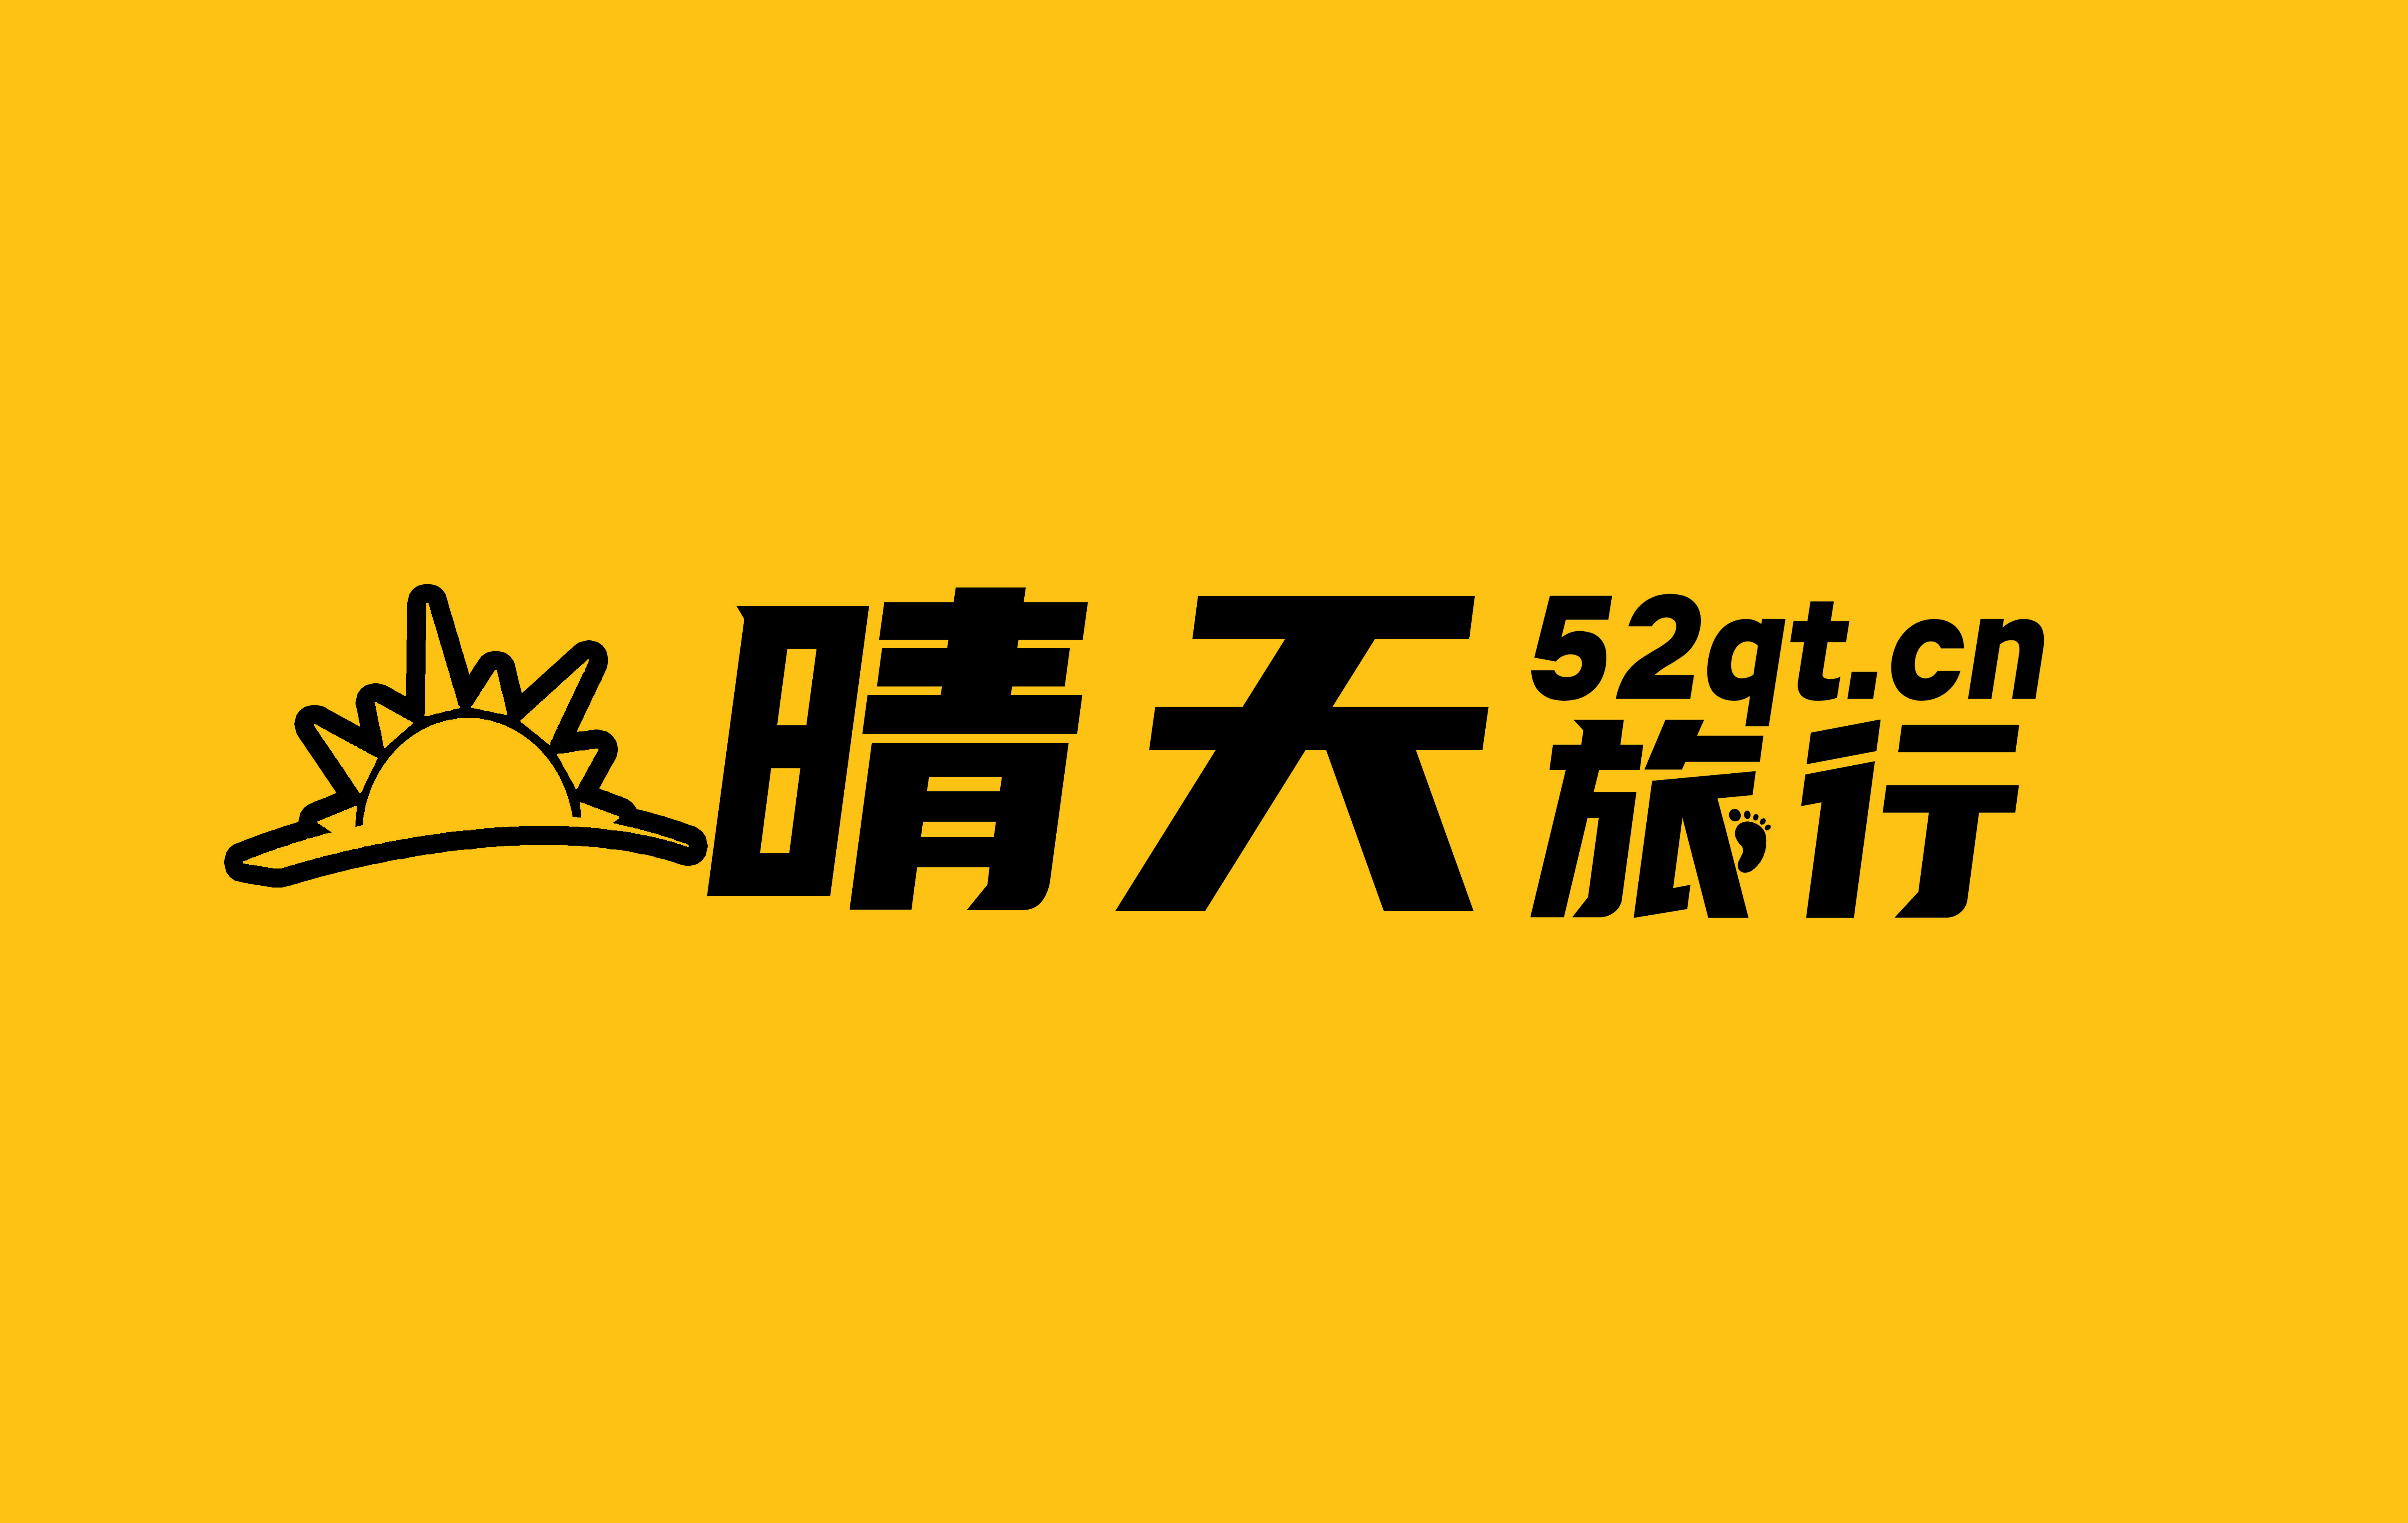 新晴天旅行 logo 原版.jpg